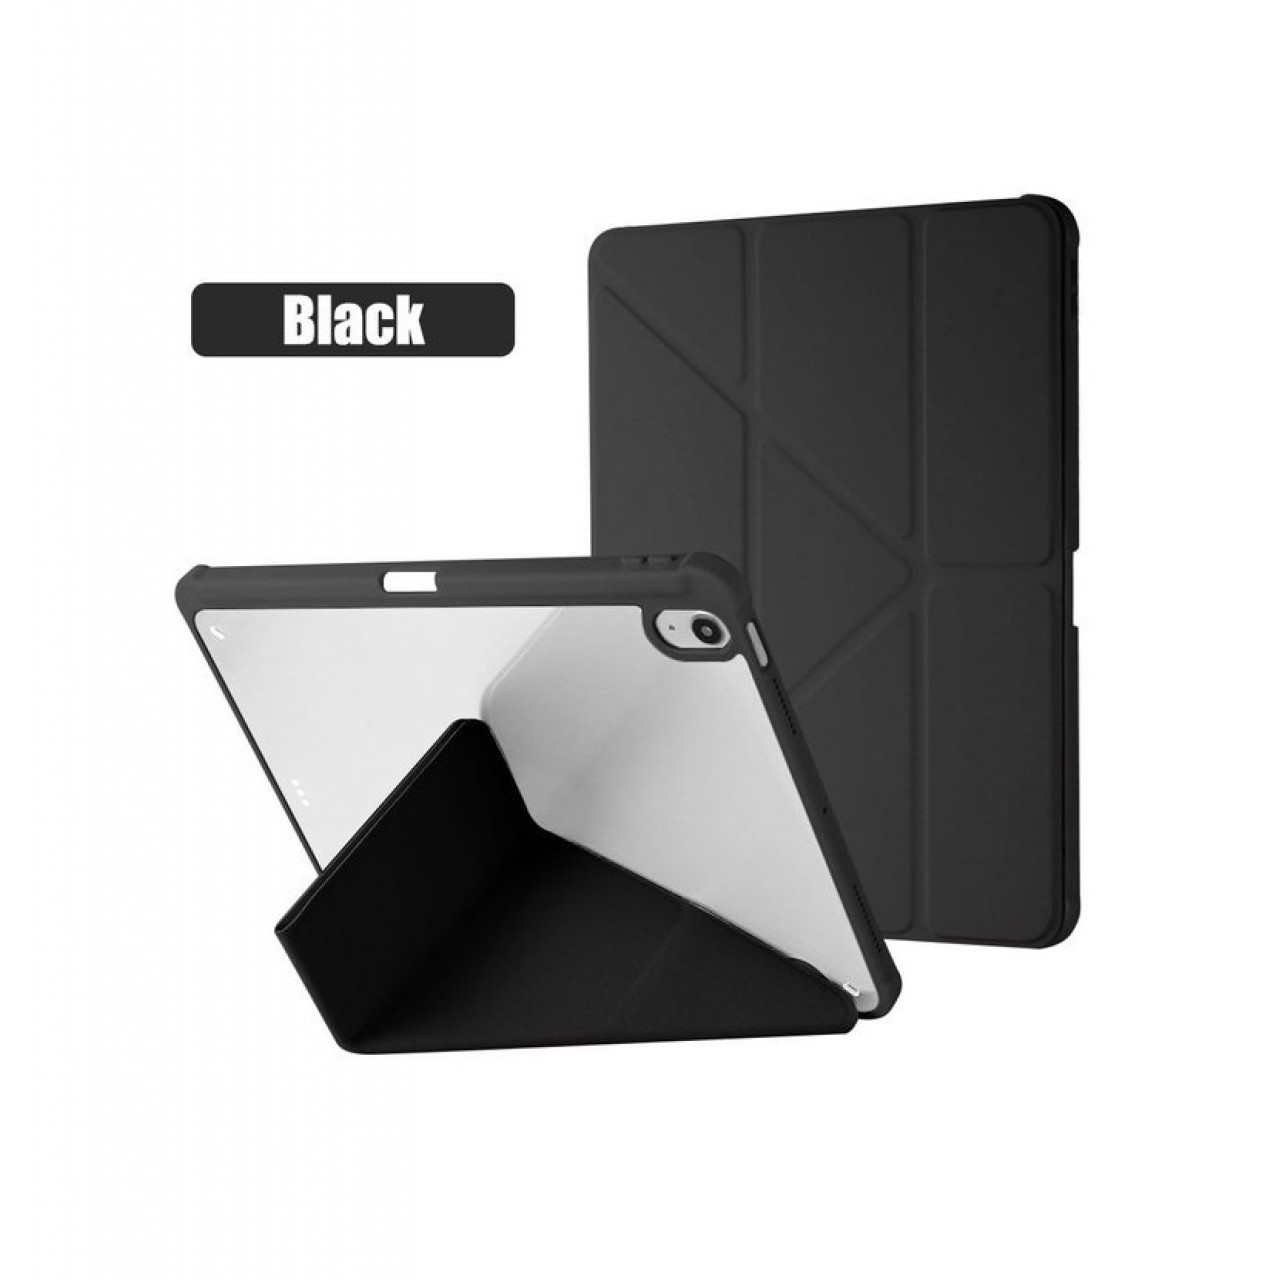 Θήκη Τάμπλετ Μαγνητική Apple iPad Air 3 pro 10.5 inch με Προστασία Κάμερας και Θέση για Γραφίδα - Black